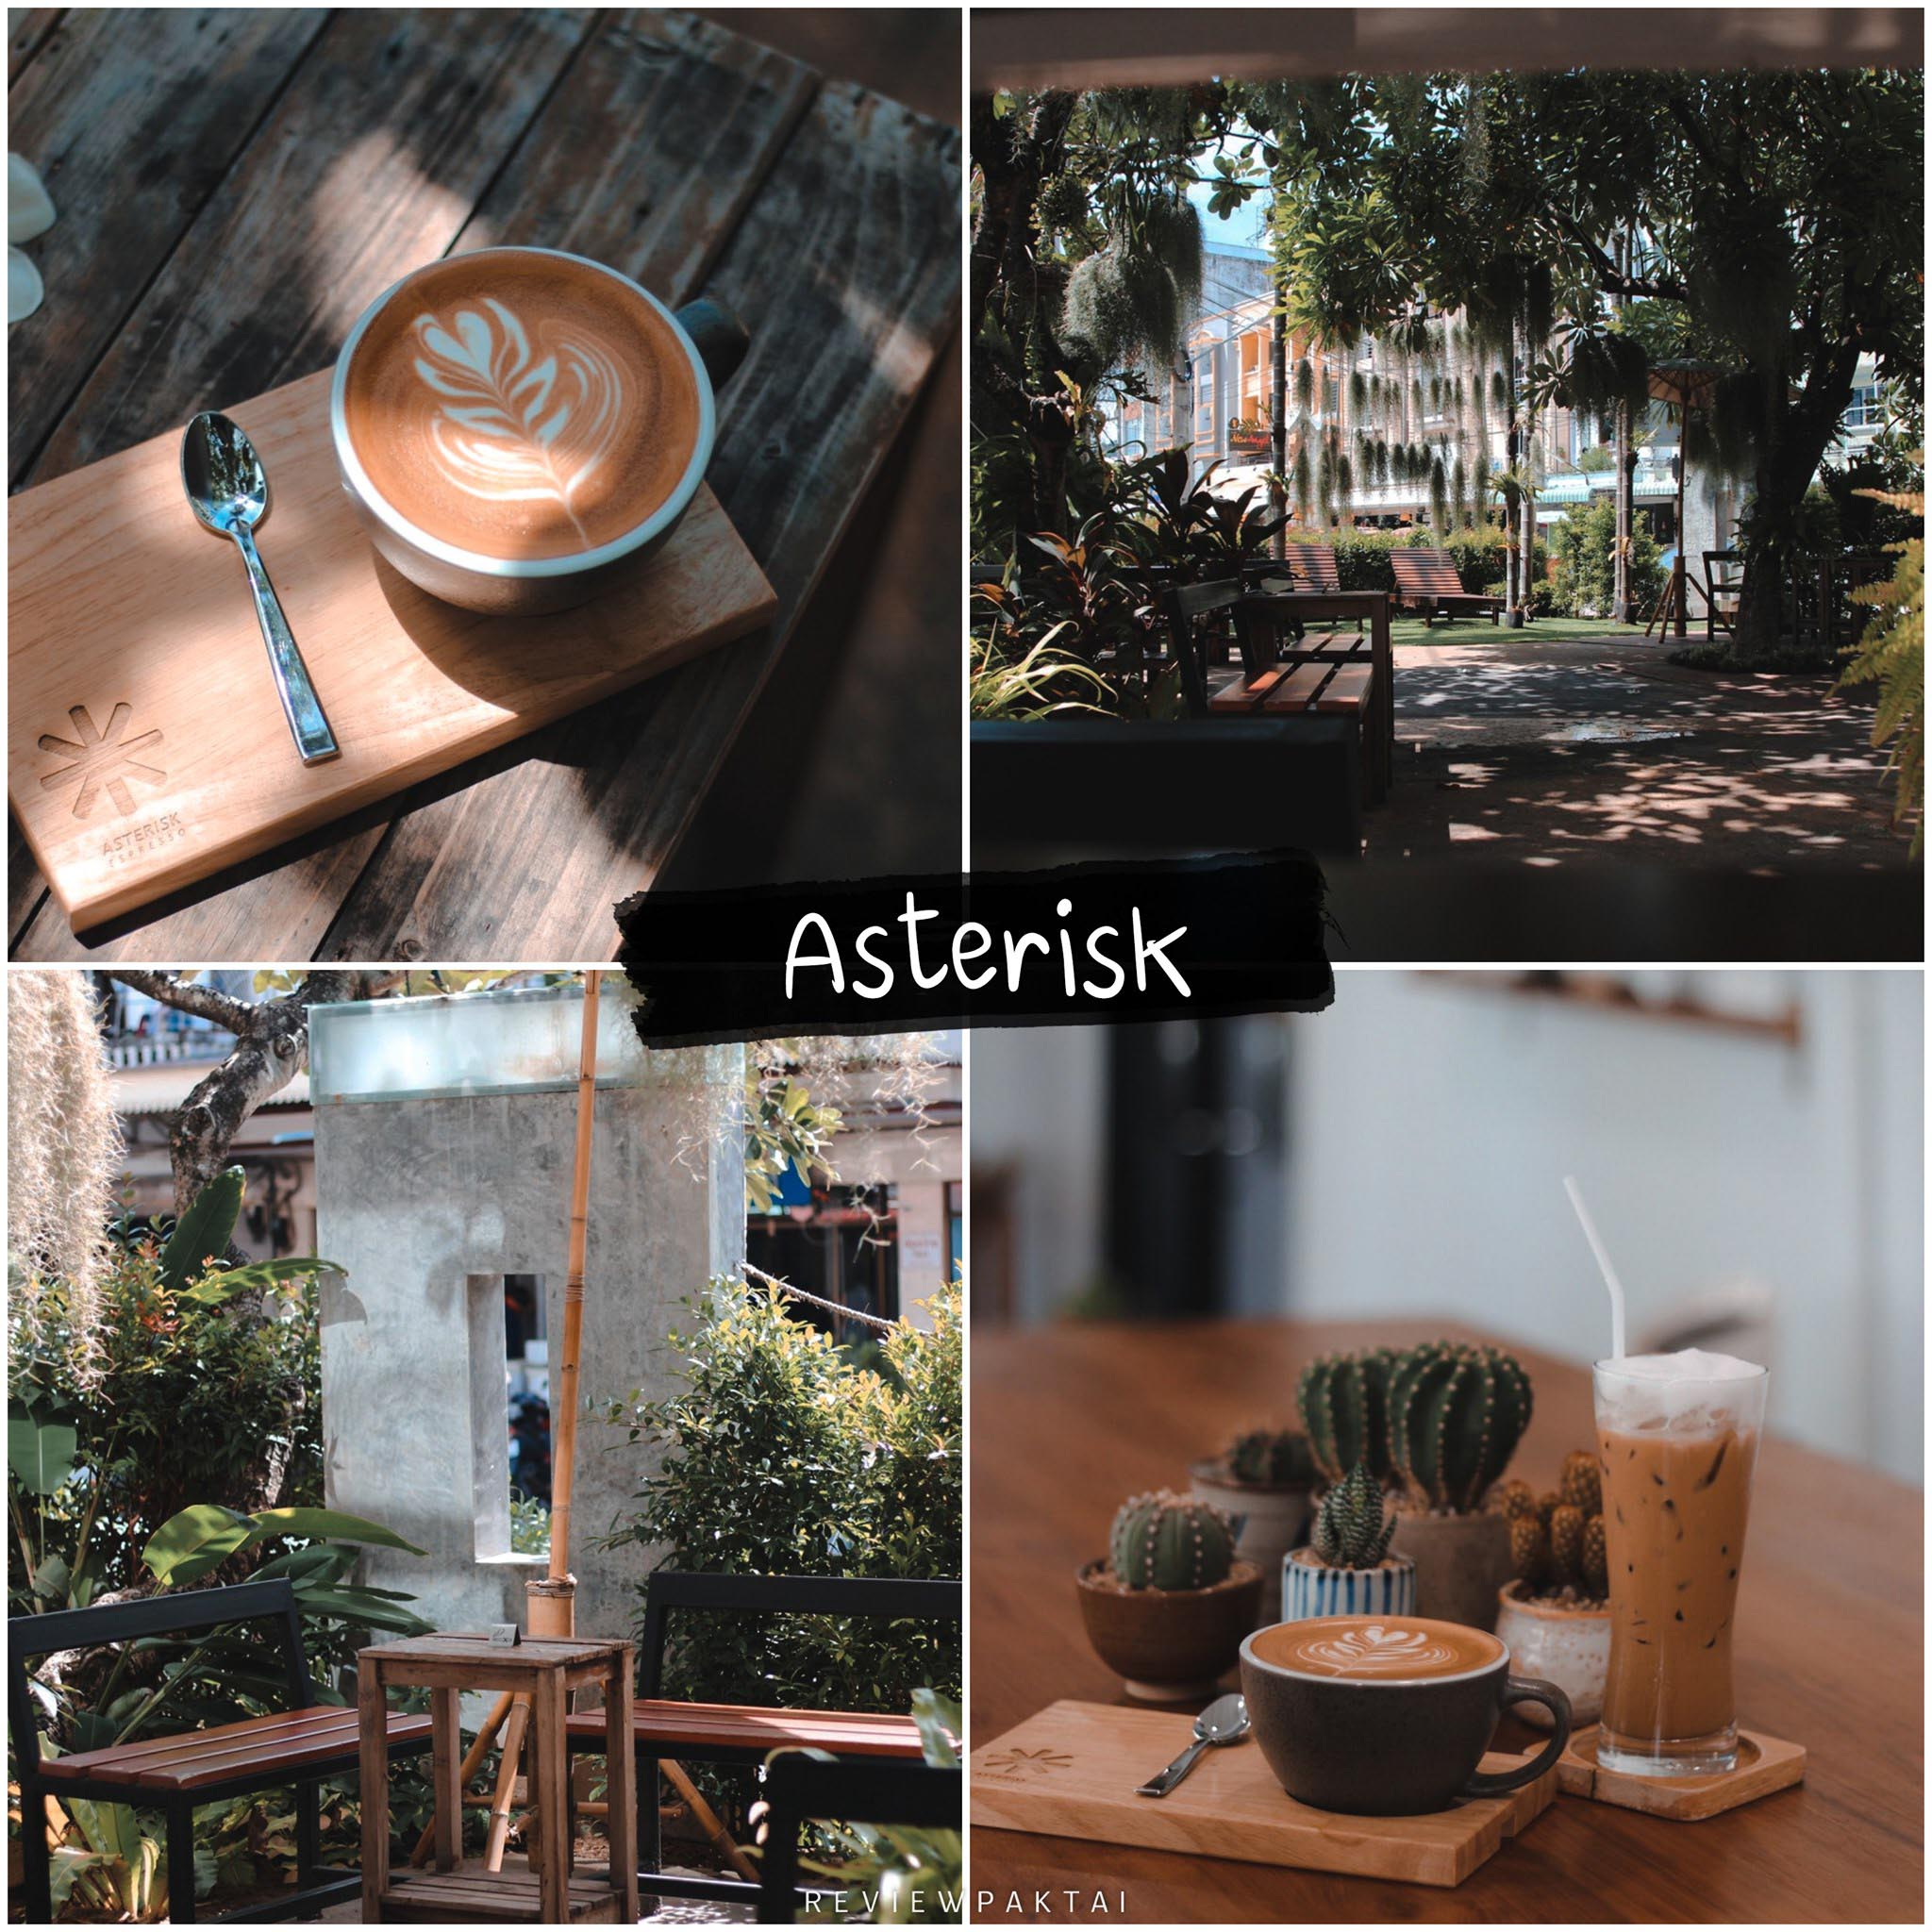 Asterisk-espresso จุดเช็คอินสายชิล-Asterisk-espresso-กาแฟดี-ร้านมีทีเด็ดเรื่องกาแฟ-คอกาแฟจะปลื้มแน่นอนที่นี้-ที่ร้านมีกาแฟหลายสายพันธุ์ให้เลือกให้ลอง-ไม่มาคือพลาดมากแม่--
ร้านชิวกับเพื่อนๆ-มีทั้งห้องแอร์และห้องธรรมดาให้เลือกนั่งได้ตามใจคุณ-อาหารและเครื่องดื่มอร่อยแน่นอน300%-ความชิวนี้ไม่ไปไม่ได้แล้ว-อาหารหร่อย-เครื่องดื่มมีให้เลือกเยอะมาก-กาแฟหอมกรุ่นไม่ผิดหวังอยากไปตามพิกัดนี้เลย-74-274-ถนน-พูนผล-ตำบลตลาดเหนือ-เมือง-ภูเก็ตแล้วจะไม่ผิดหวังแน่นอนกับความอร่อย ภูเก็ต,คาเฟ่,ที่เที่ยว,ร้านกาแฟ,เด็ด,อร่อย,ต้องลอง